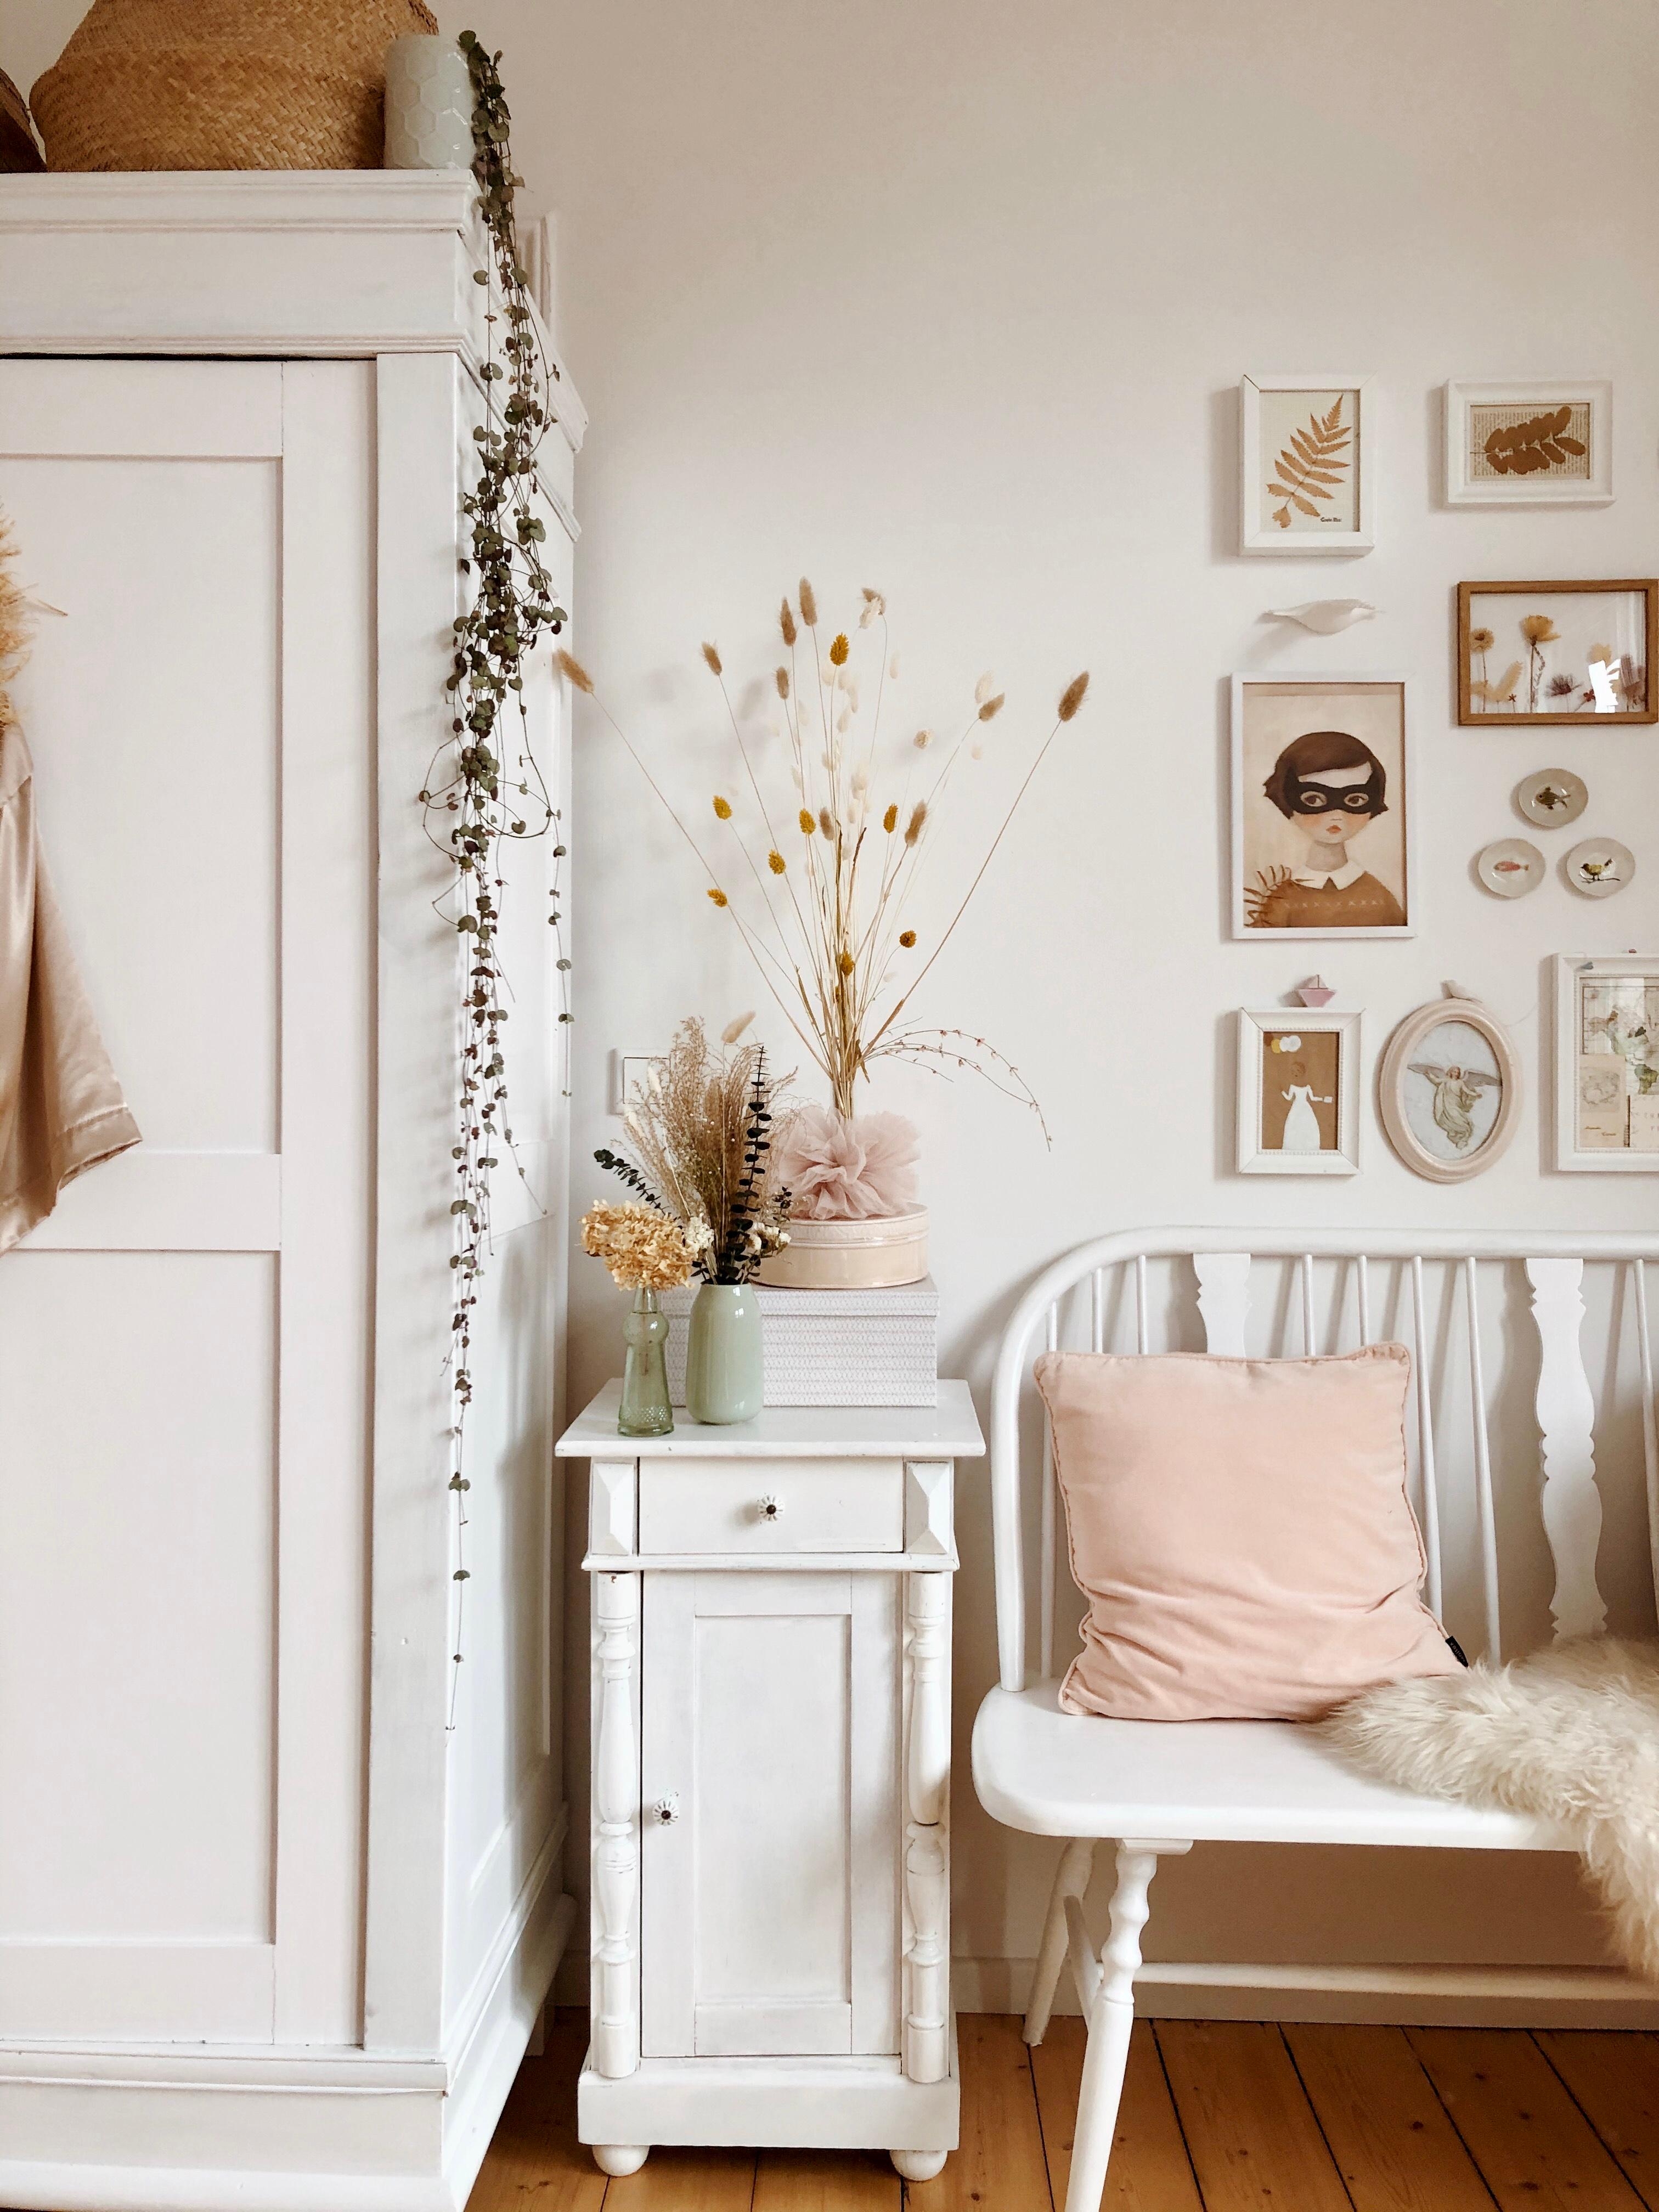 Trockeblumenliebe im Zimmer 🌿 #interior #trockenblumen #couchstyle #myhome #skandi #retro #wohnen #einrichtung